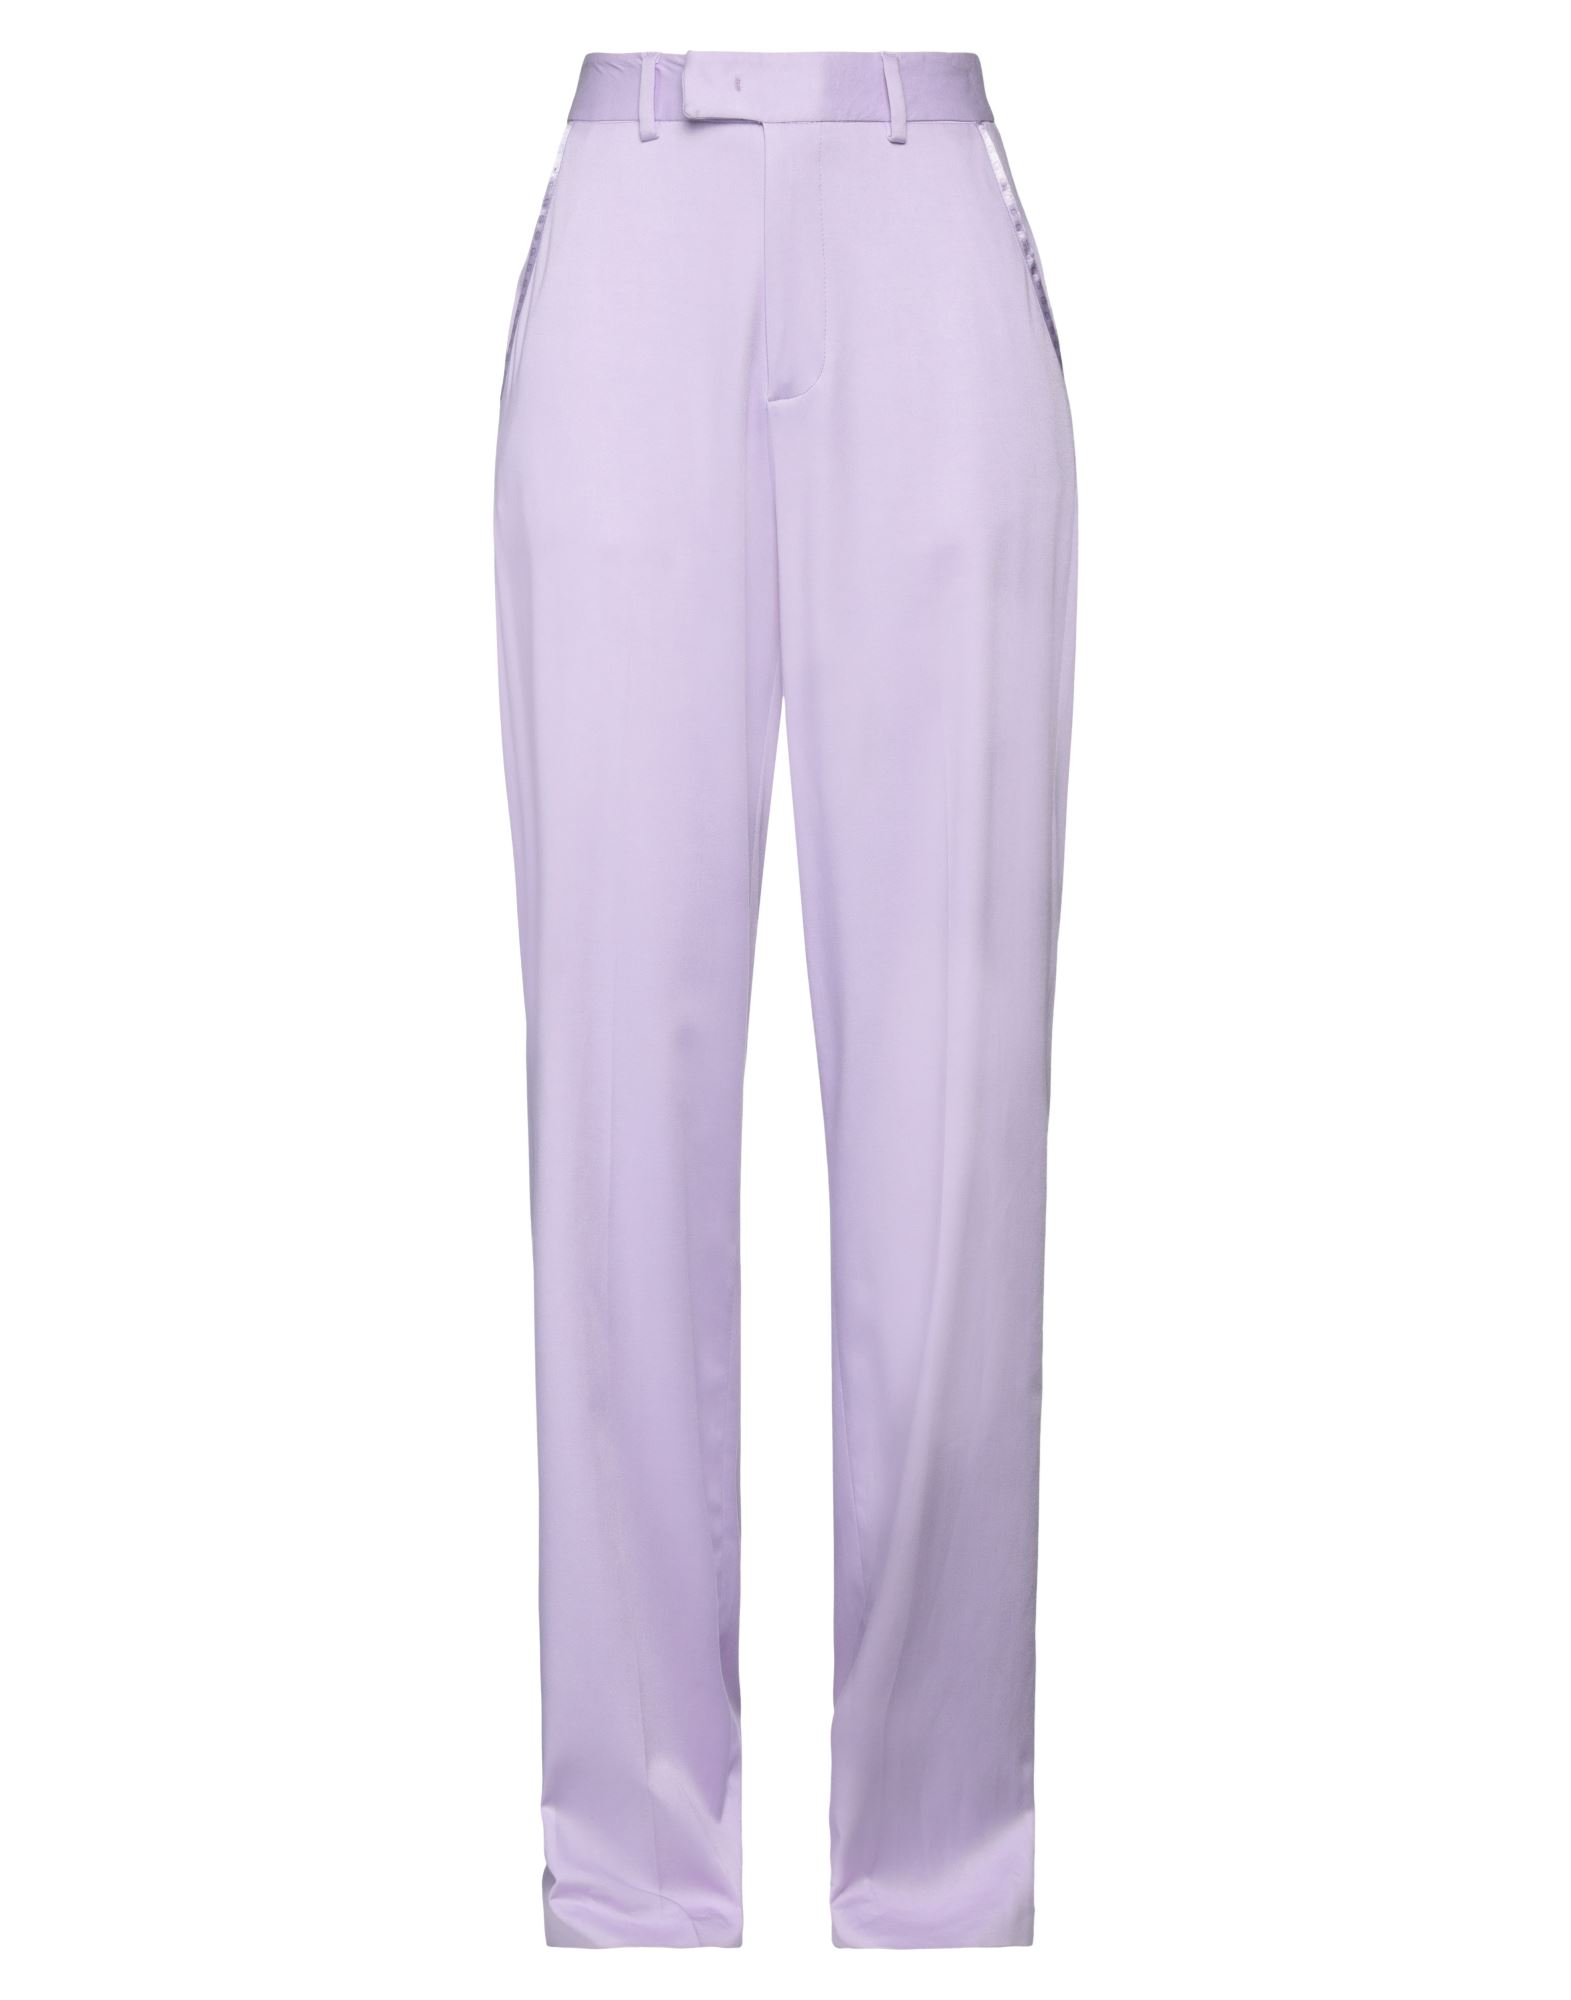 Gaelle Paris Pants In Purple